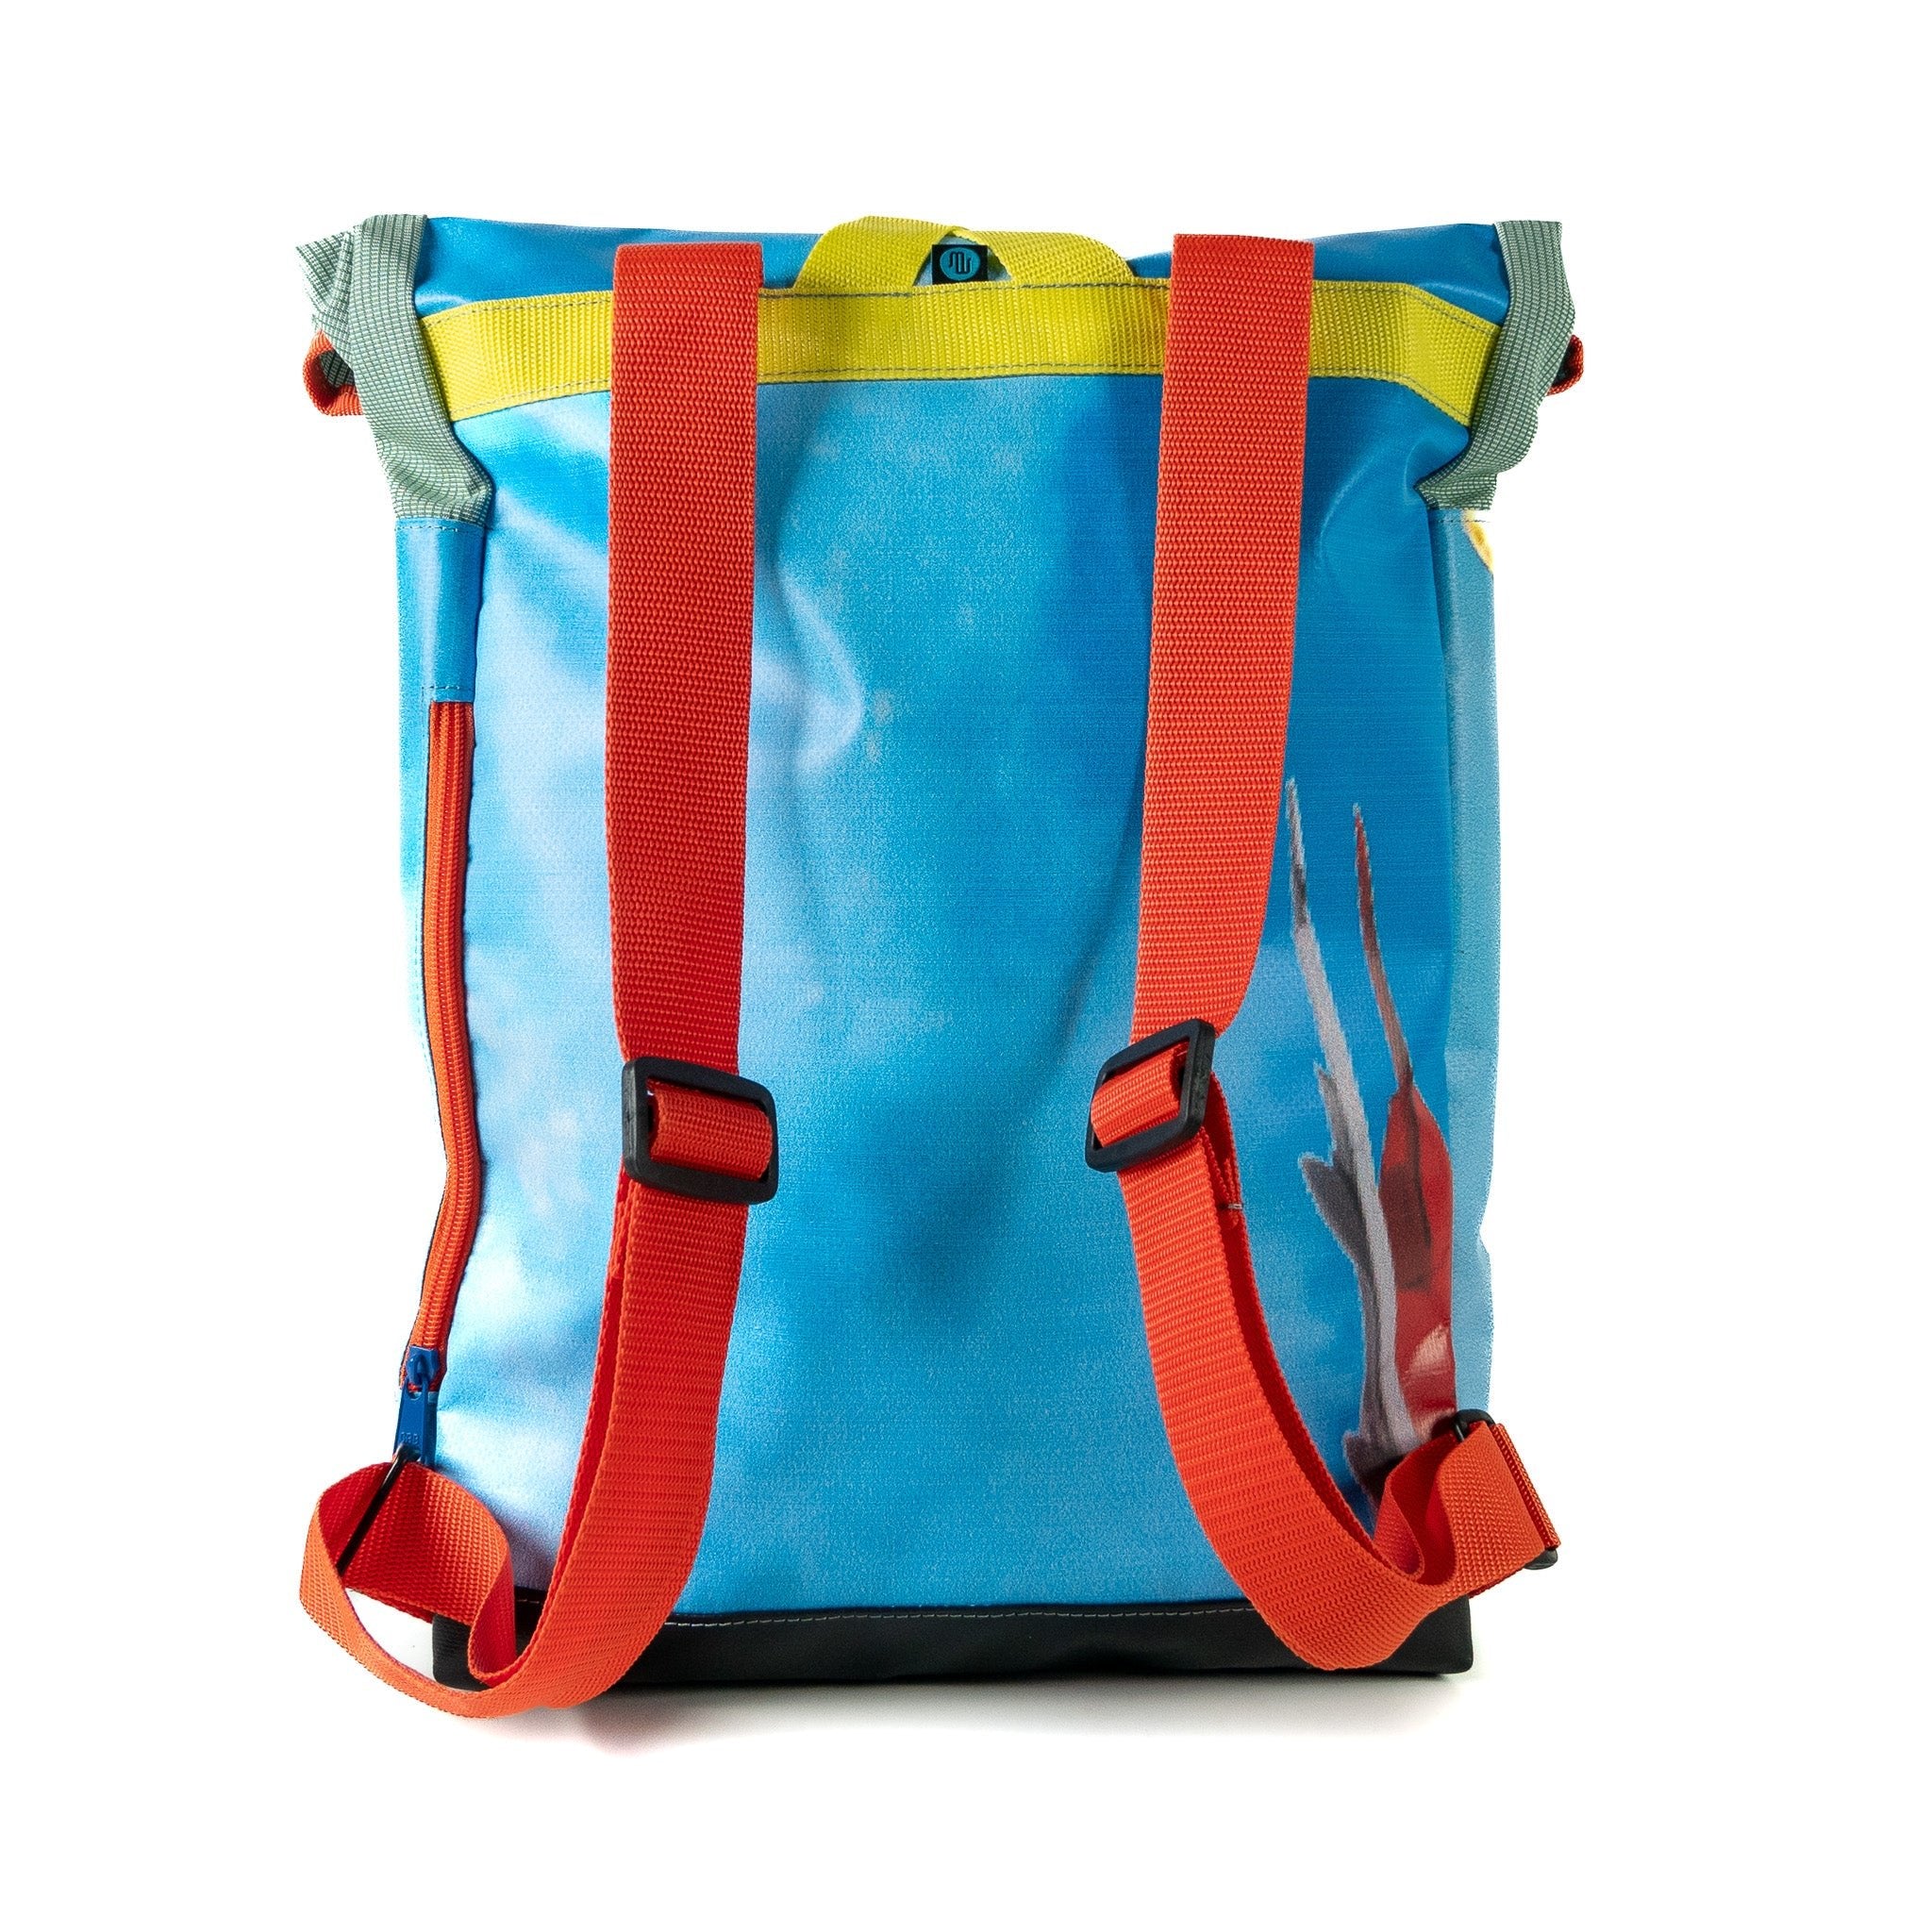 Backpack - ROLLPACK #001 - Backpack - medencebag